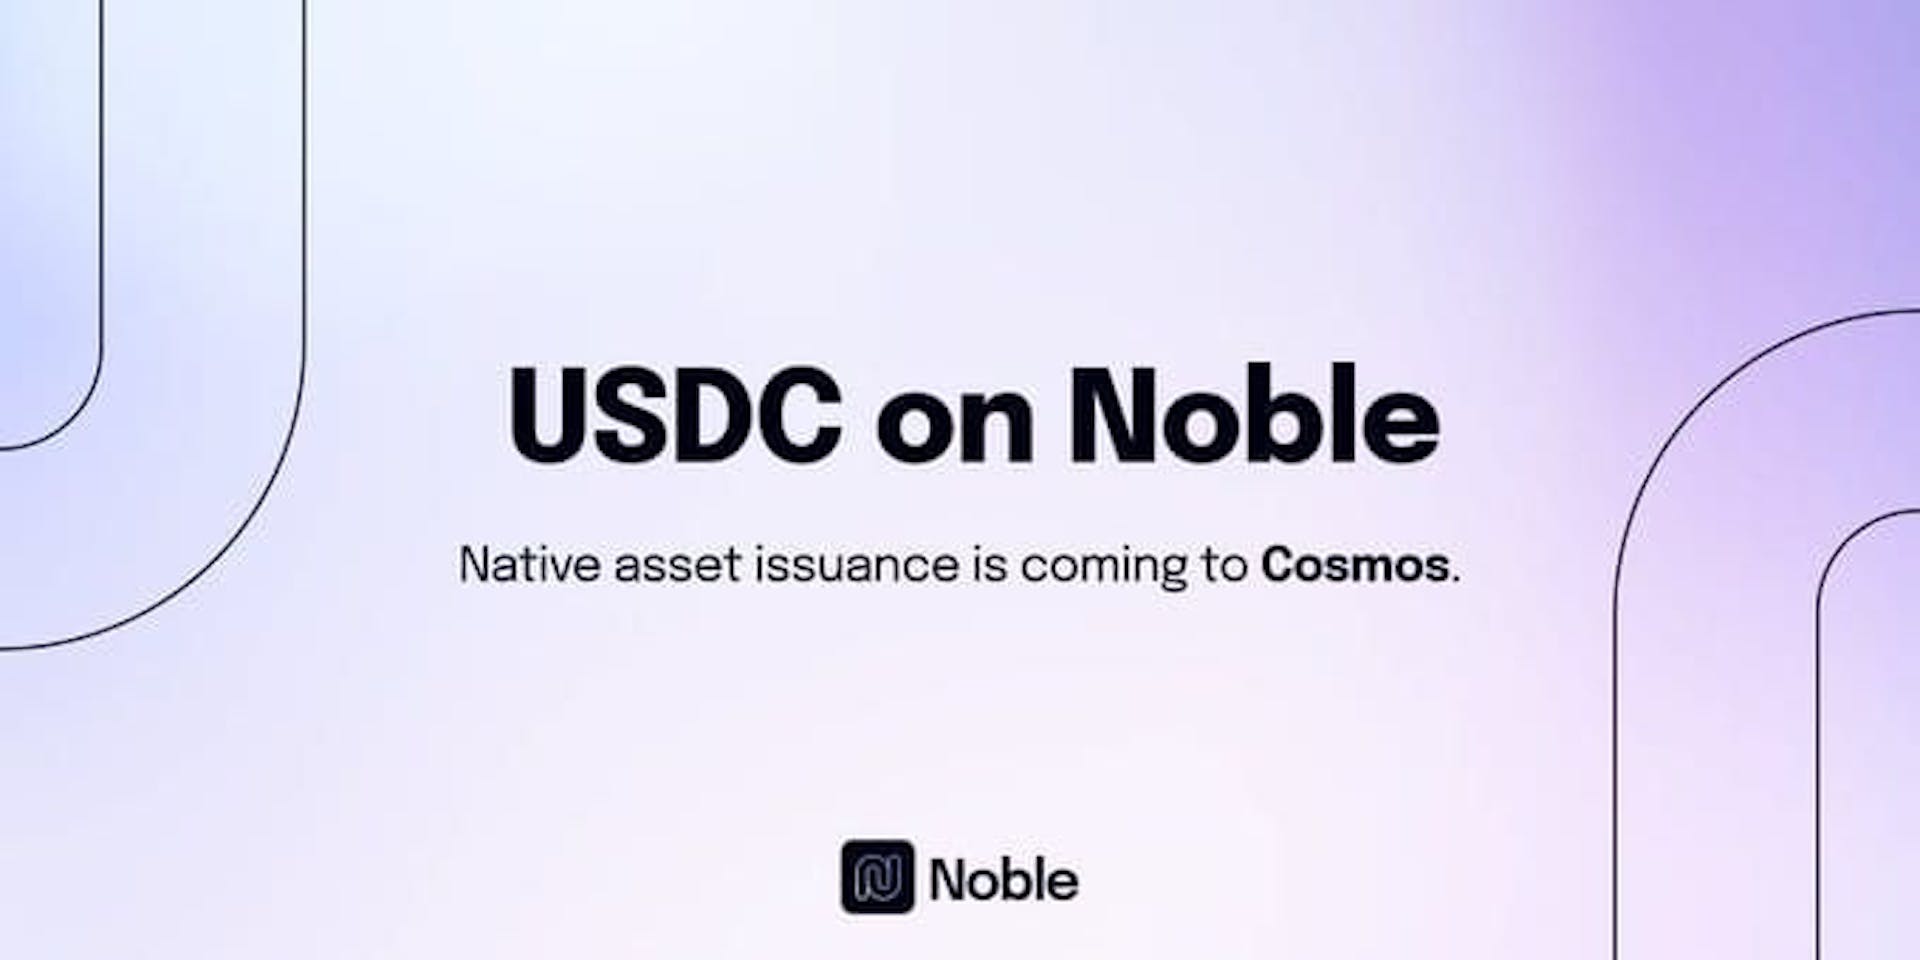 USDC on Noble